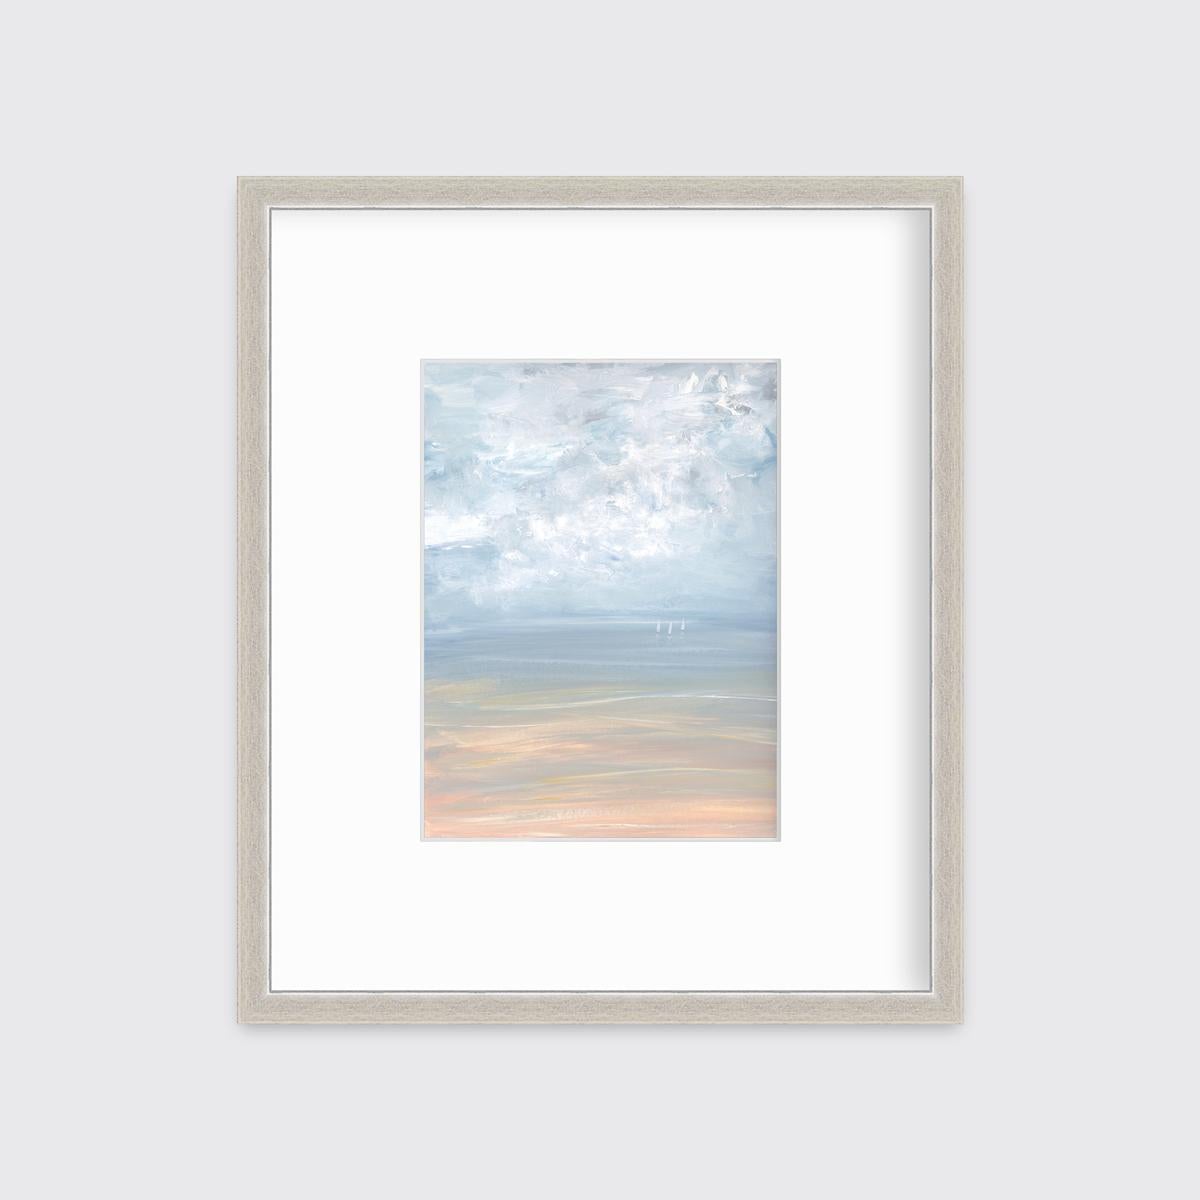 Ce paysage marin contemporain imprimé en édition limitée par A.I.C. Aldo représente une scène côtière avec un ciel bleu clair, des nuages abstraits texturés et trois petits voiliers à l'horizon. 

Ce tirage en édition limitée est édité à 195